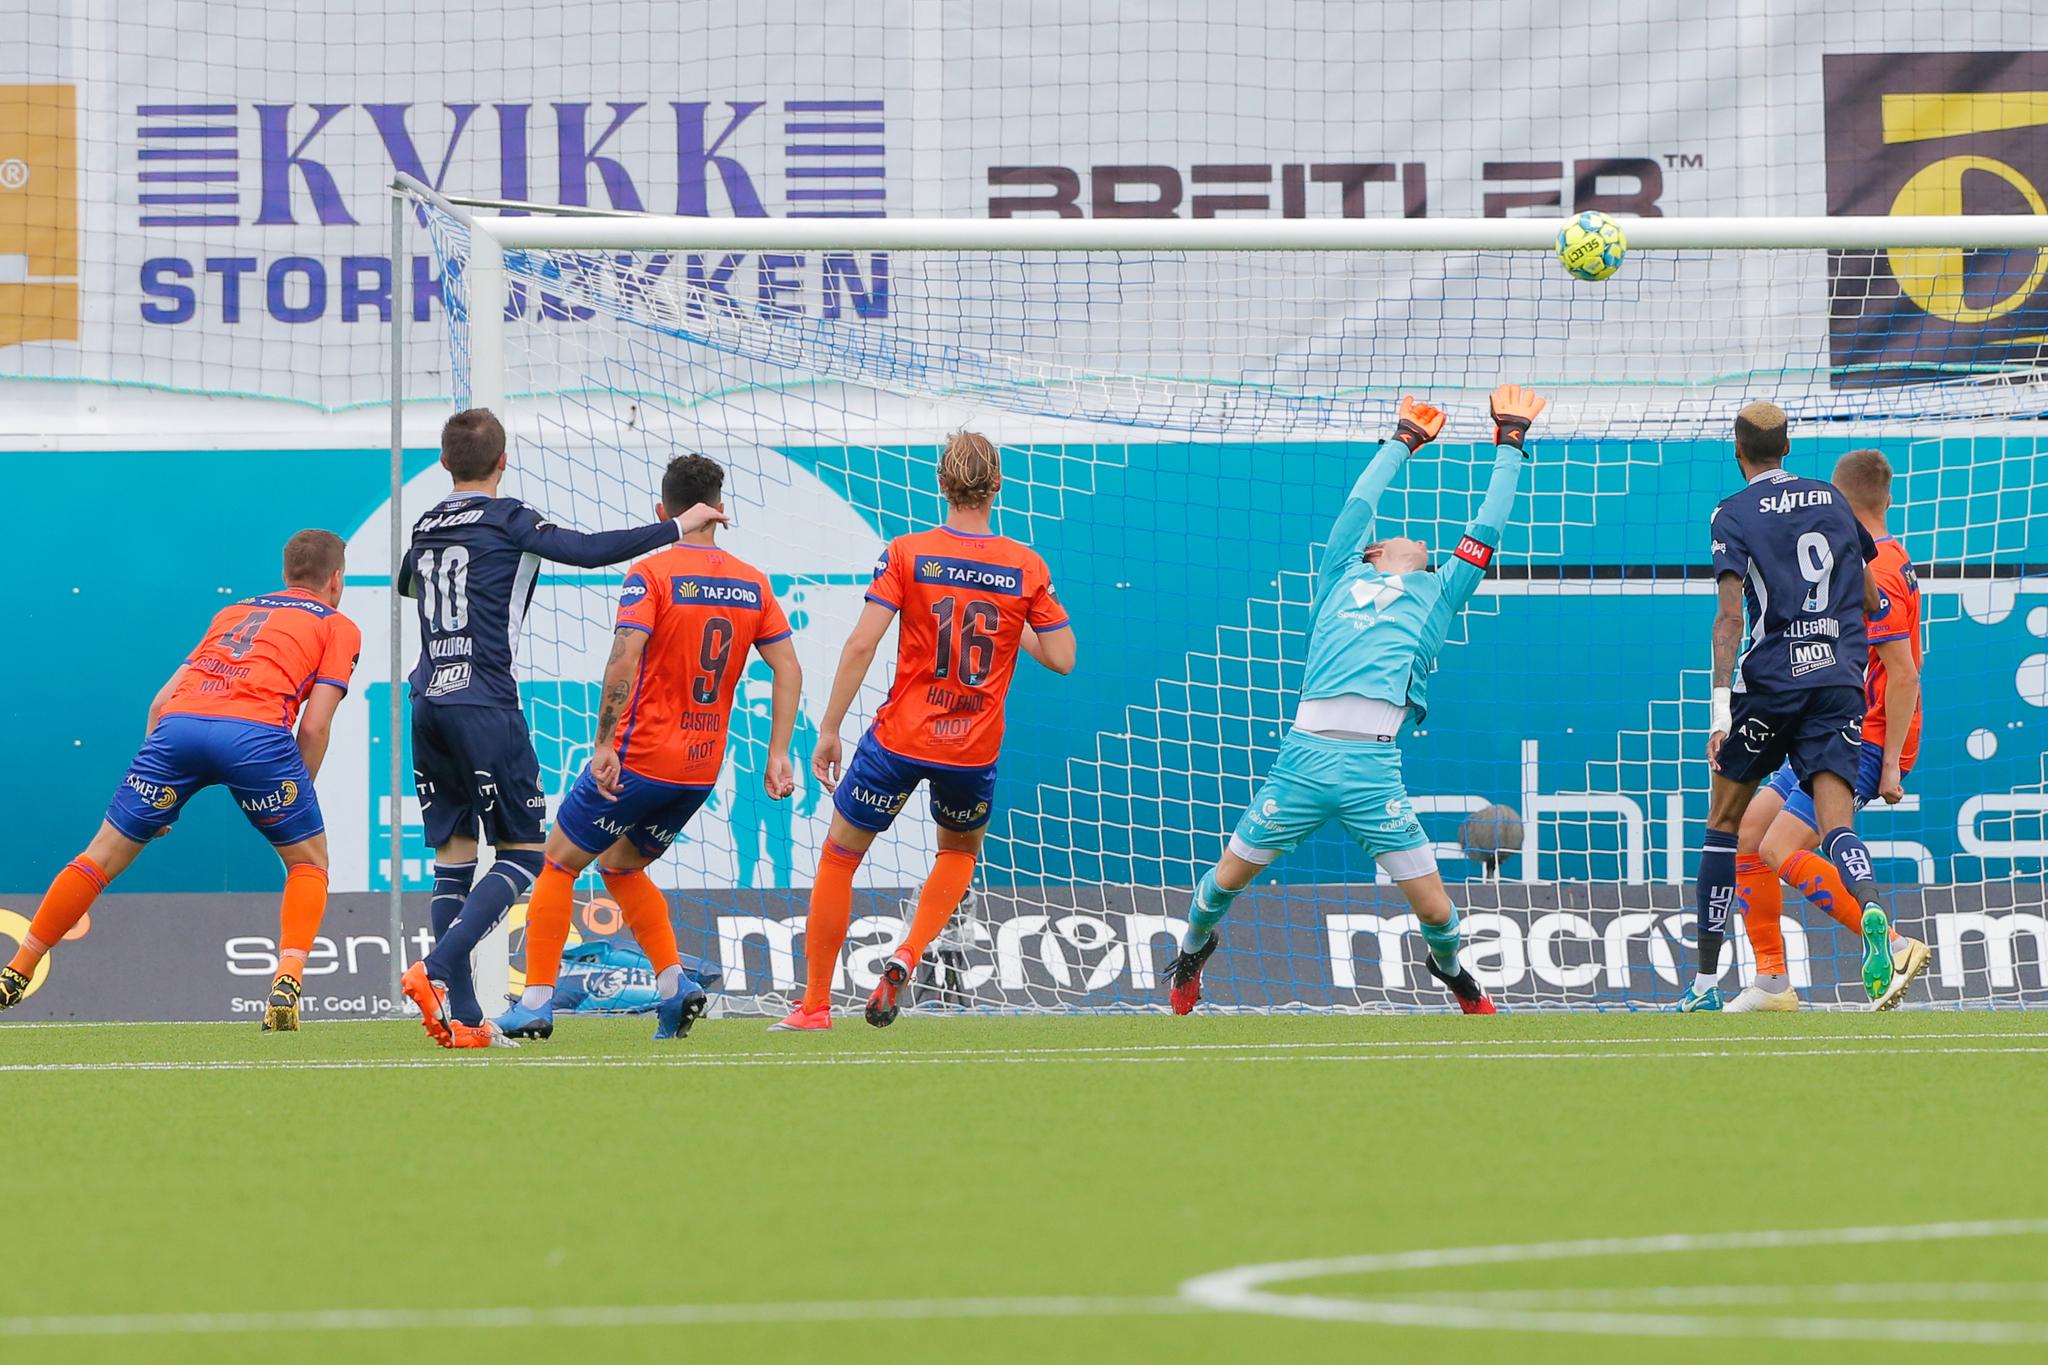 Aalesund ble utspilt og knust 7-2 av Kristiansund i Eliteserien søndag. 